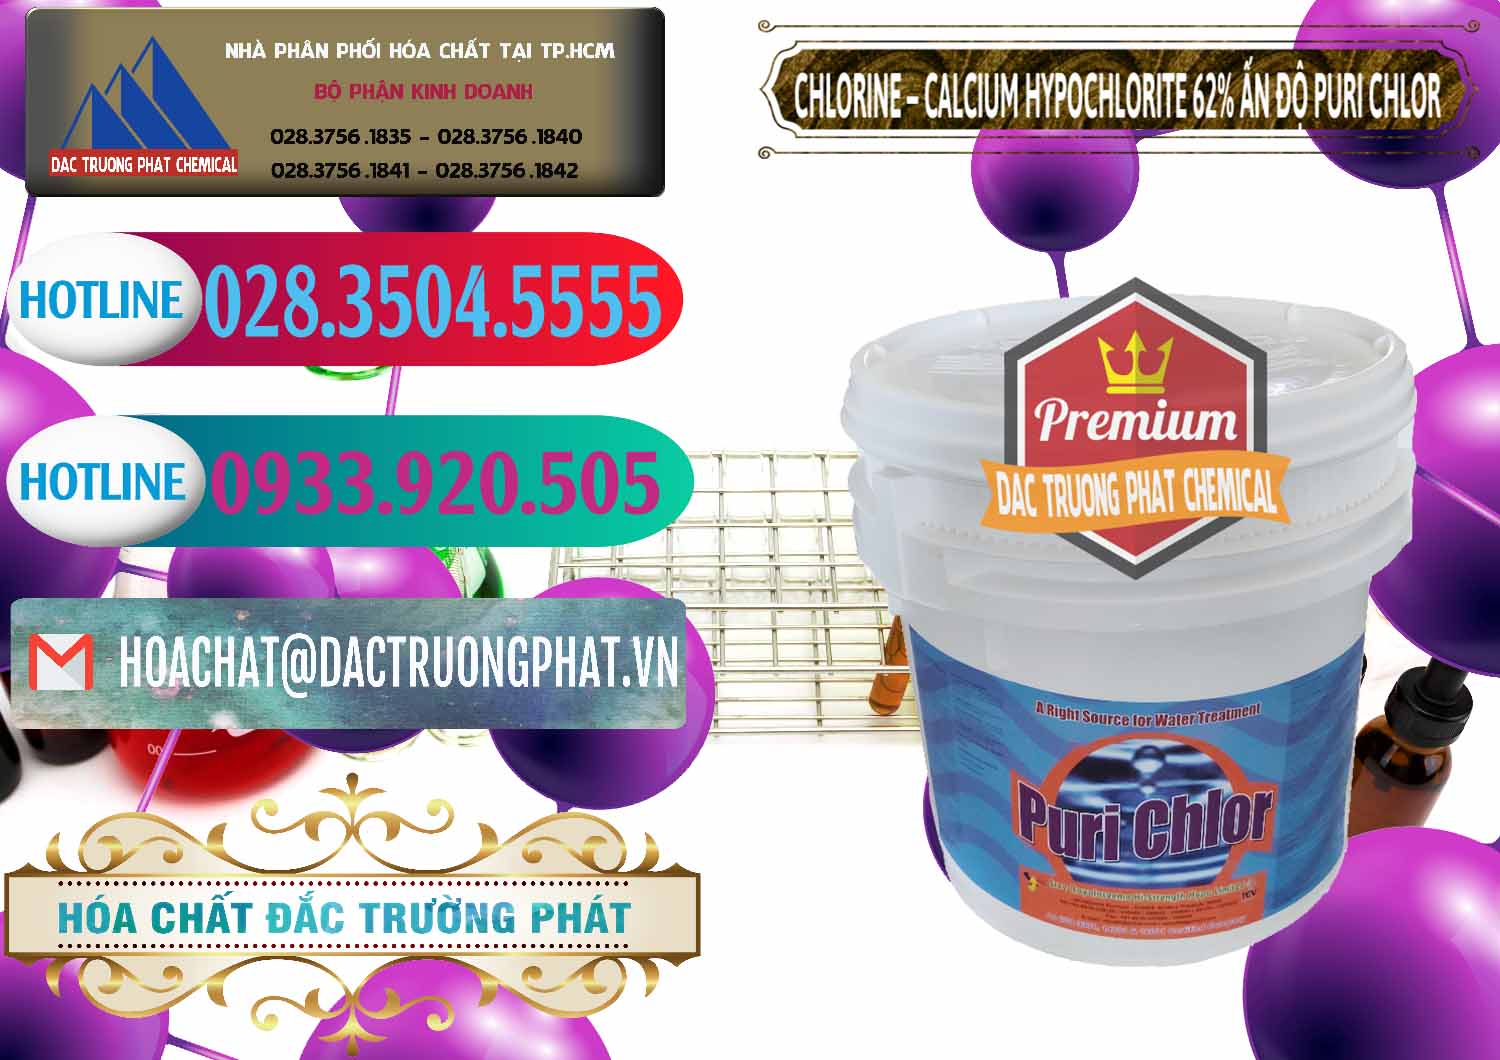 Nơi cung ứng và bán Chlorine – Clorin 62% Puri Chlo Ấn Độ India - 0052 - Cty chuyên phân phối & bán hóa chất tại TP.HCM - truongphat.vn